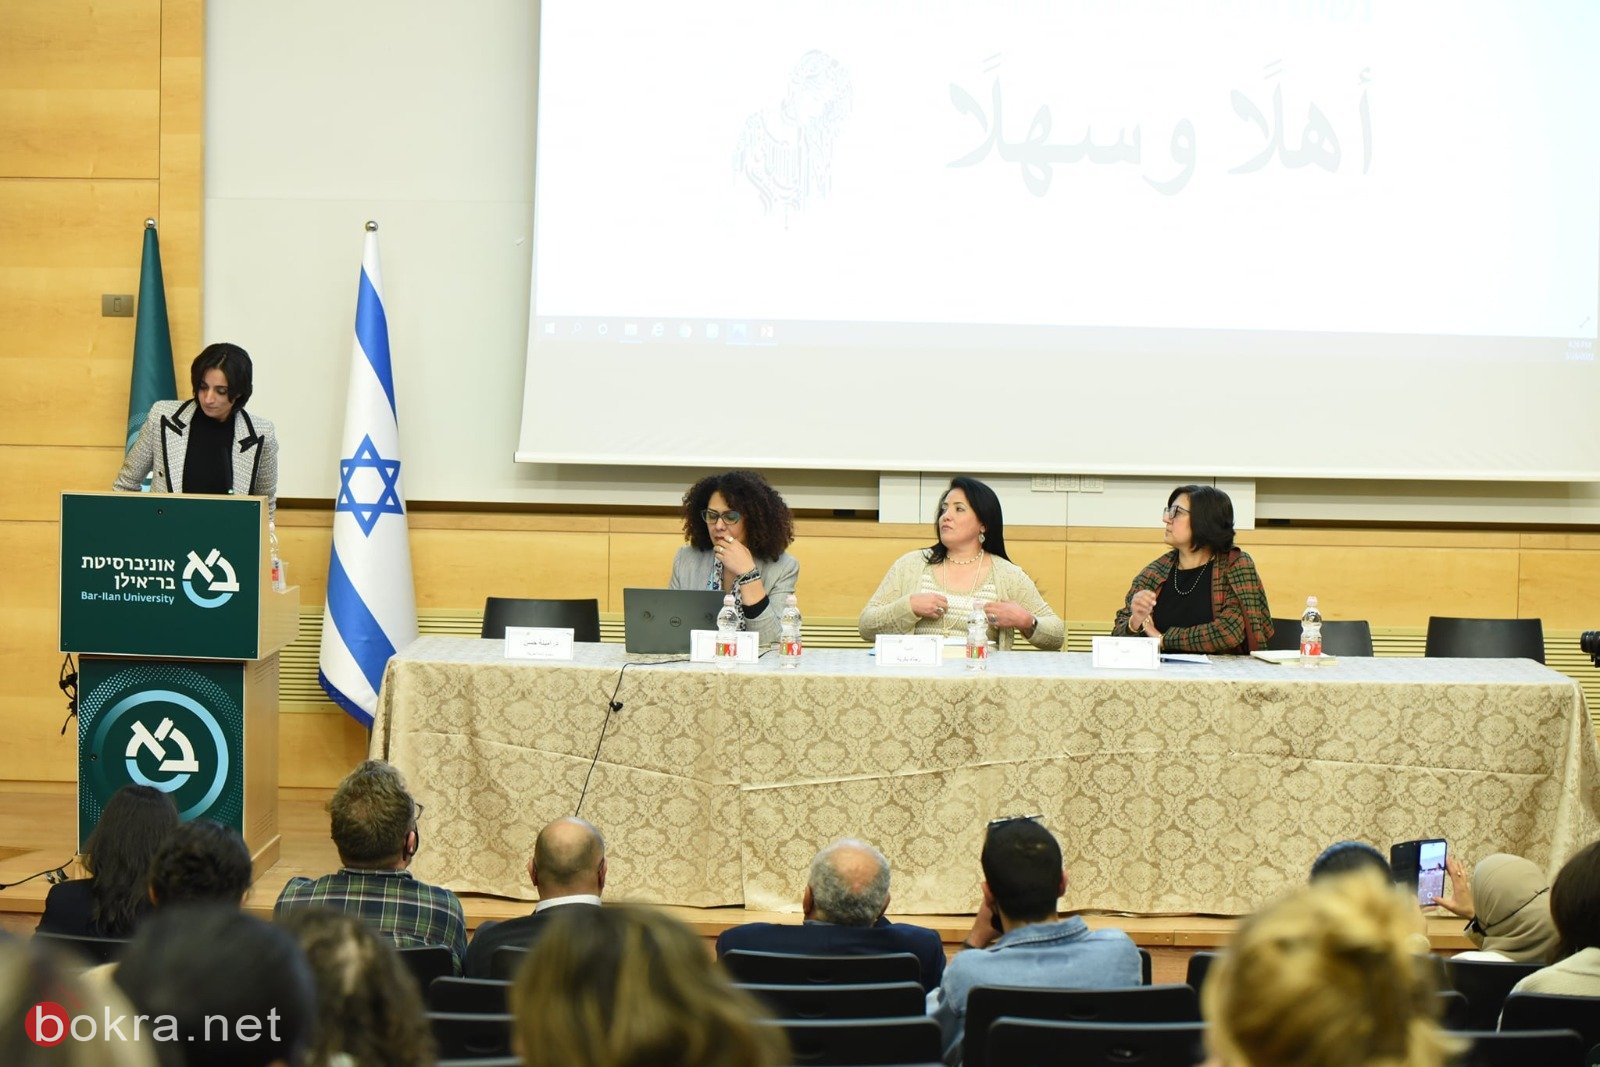 مجمع اللغة العربية يعقد مؤتمر "المرأة والإبداع في اللّغة والأدب العربيّ" بالتعاون مع جامعة بار إيلان-20